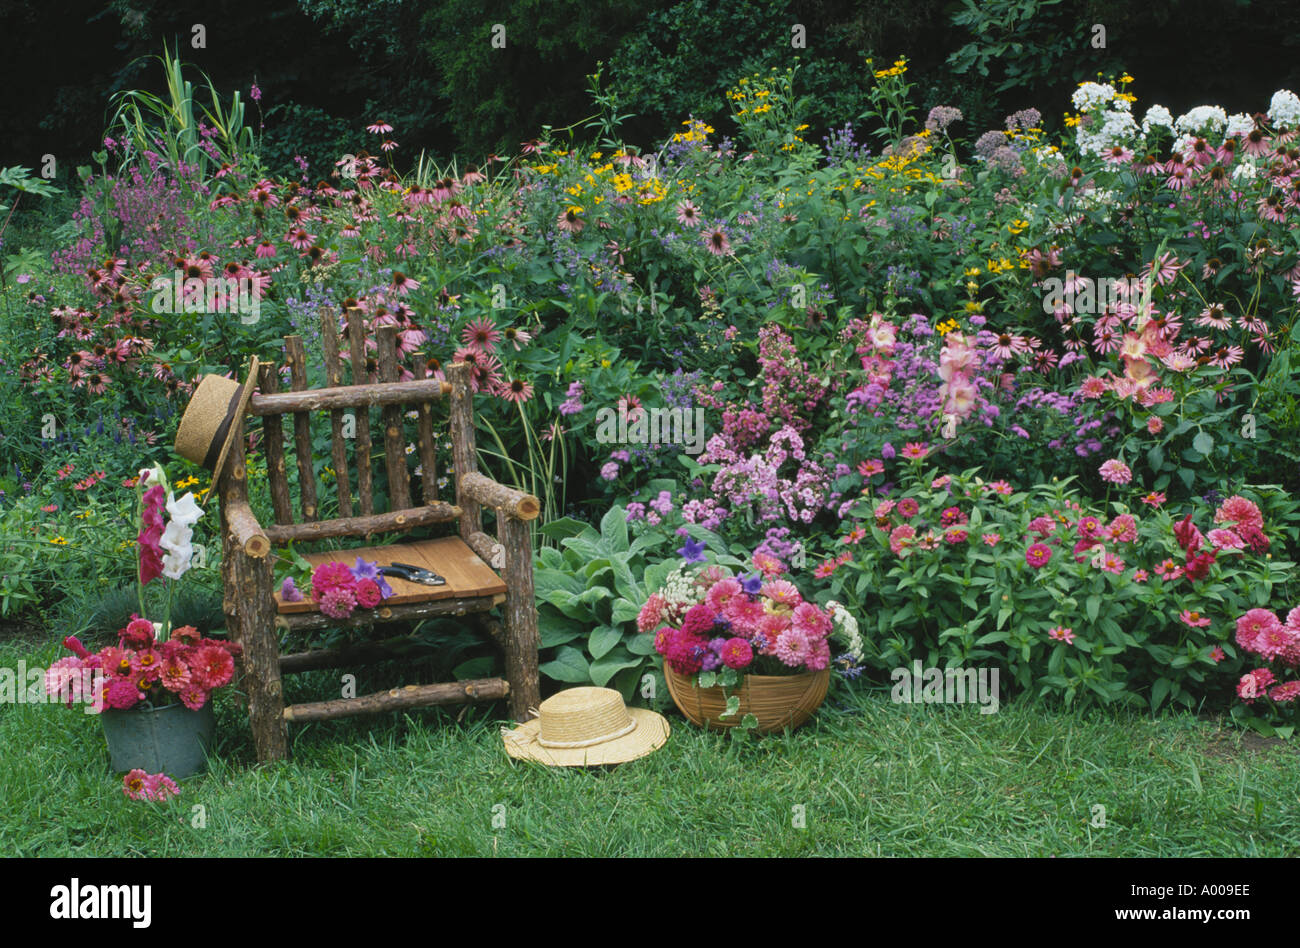 Jardin Romantique : fait main basse-cour rustique chaise de jardin de fleurs accueil de roses et rouges et de chapeaux 2 - son et le sien, Midwest USA Banque D'Images